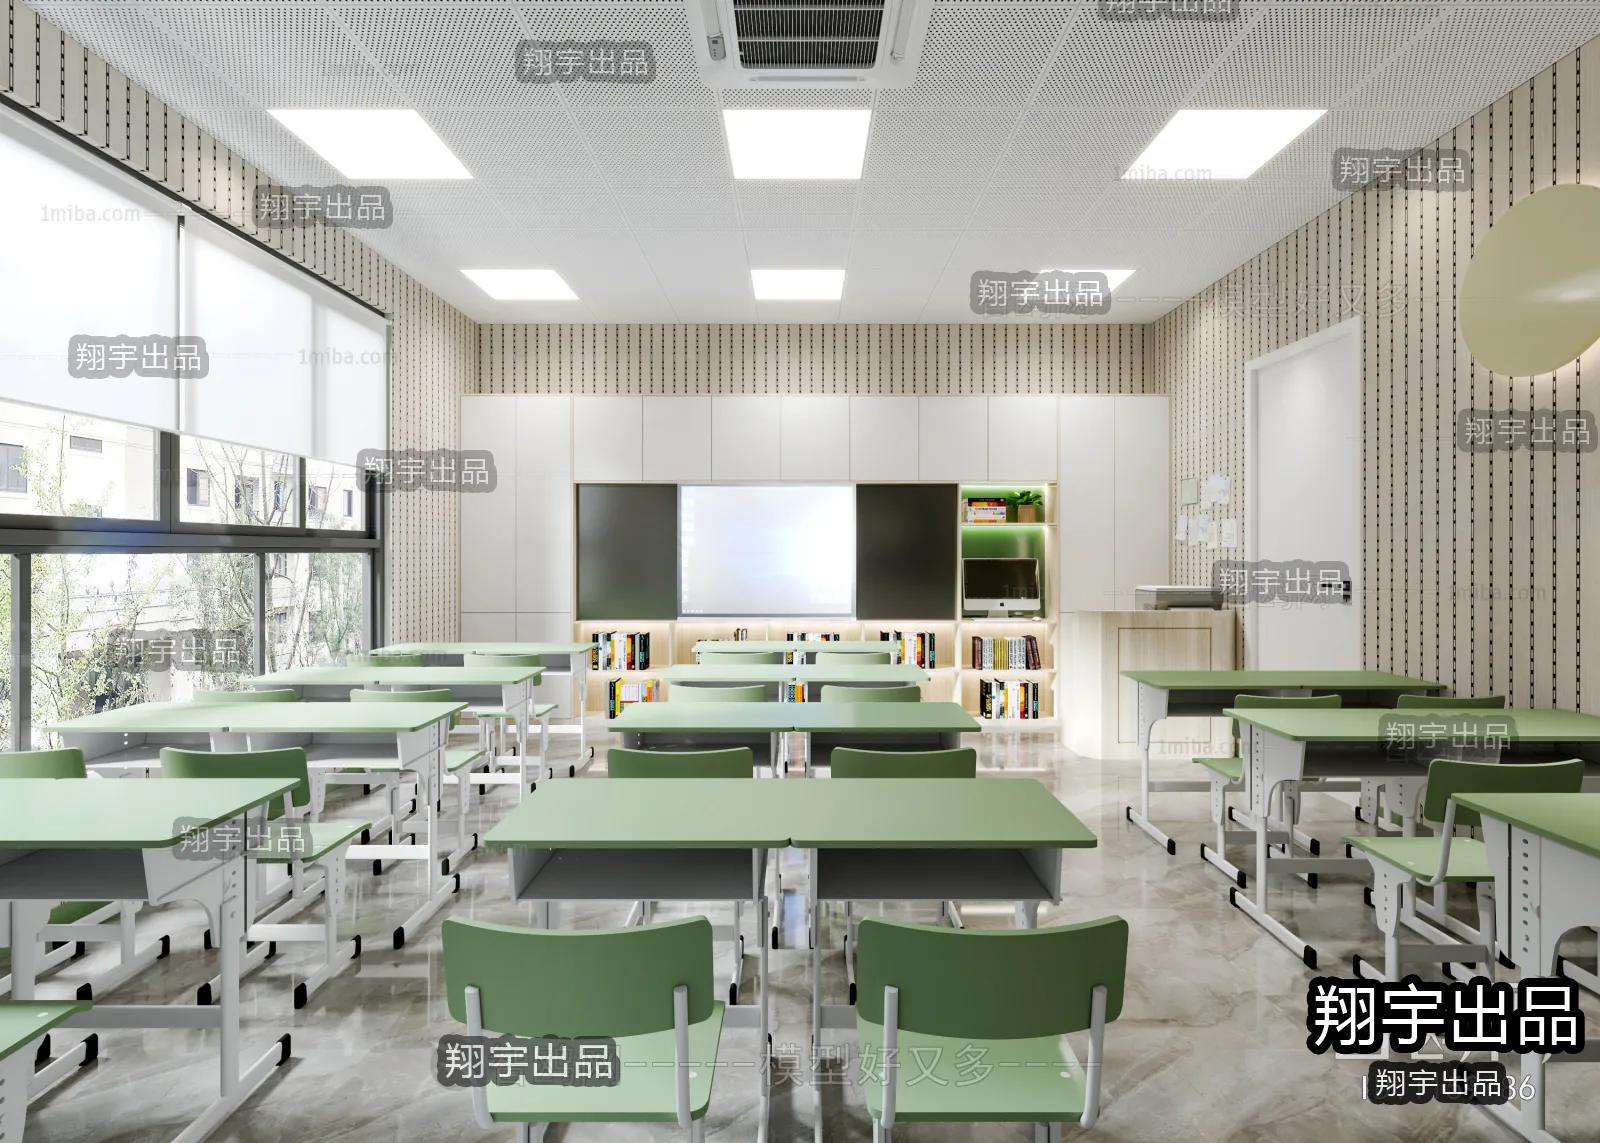 3D SCHOOL INTERIOR (VRAY) – CLASSROOM 3D SCENES – 012